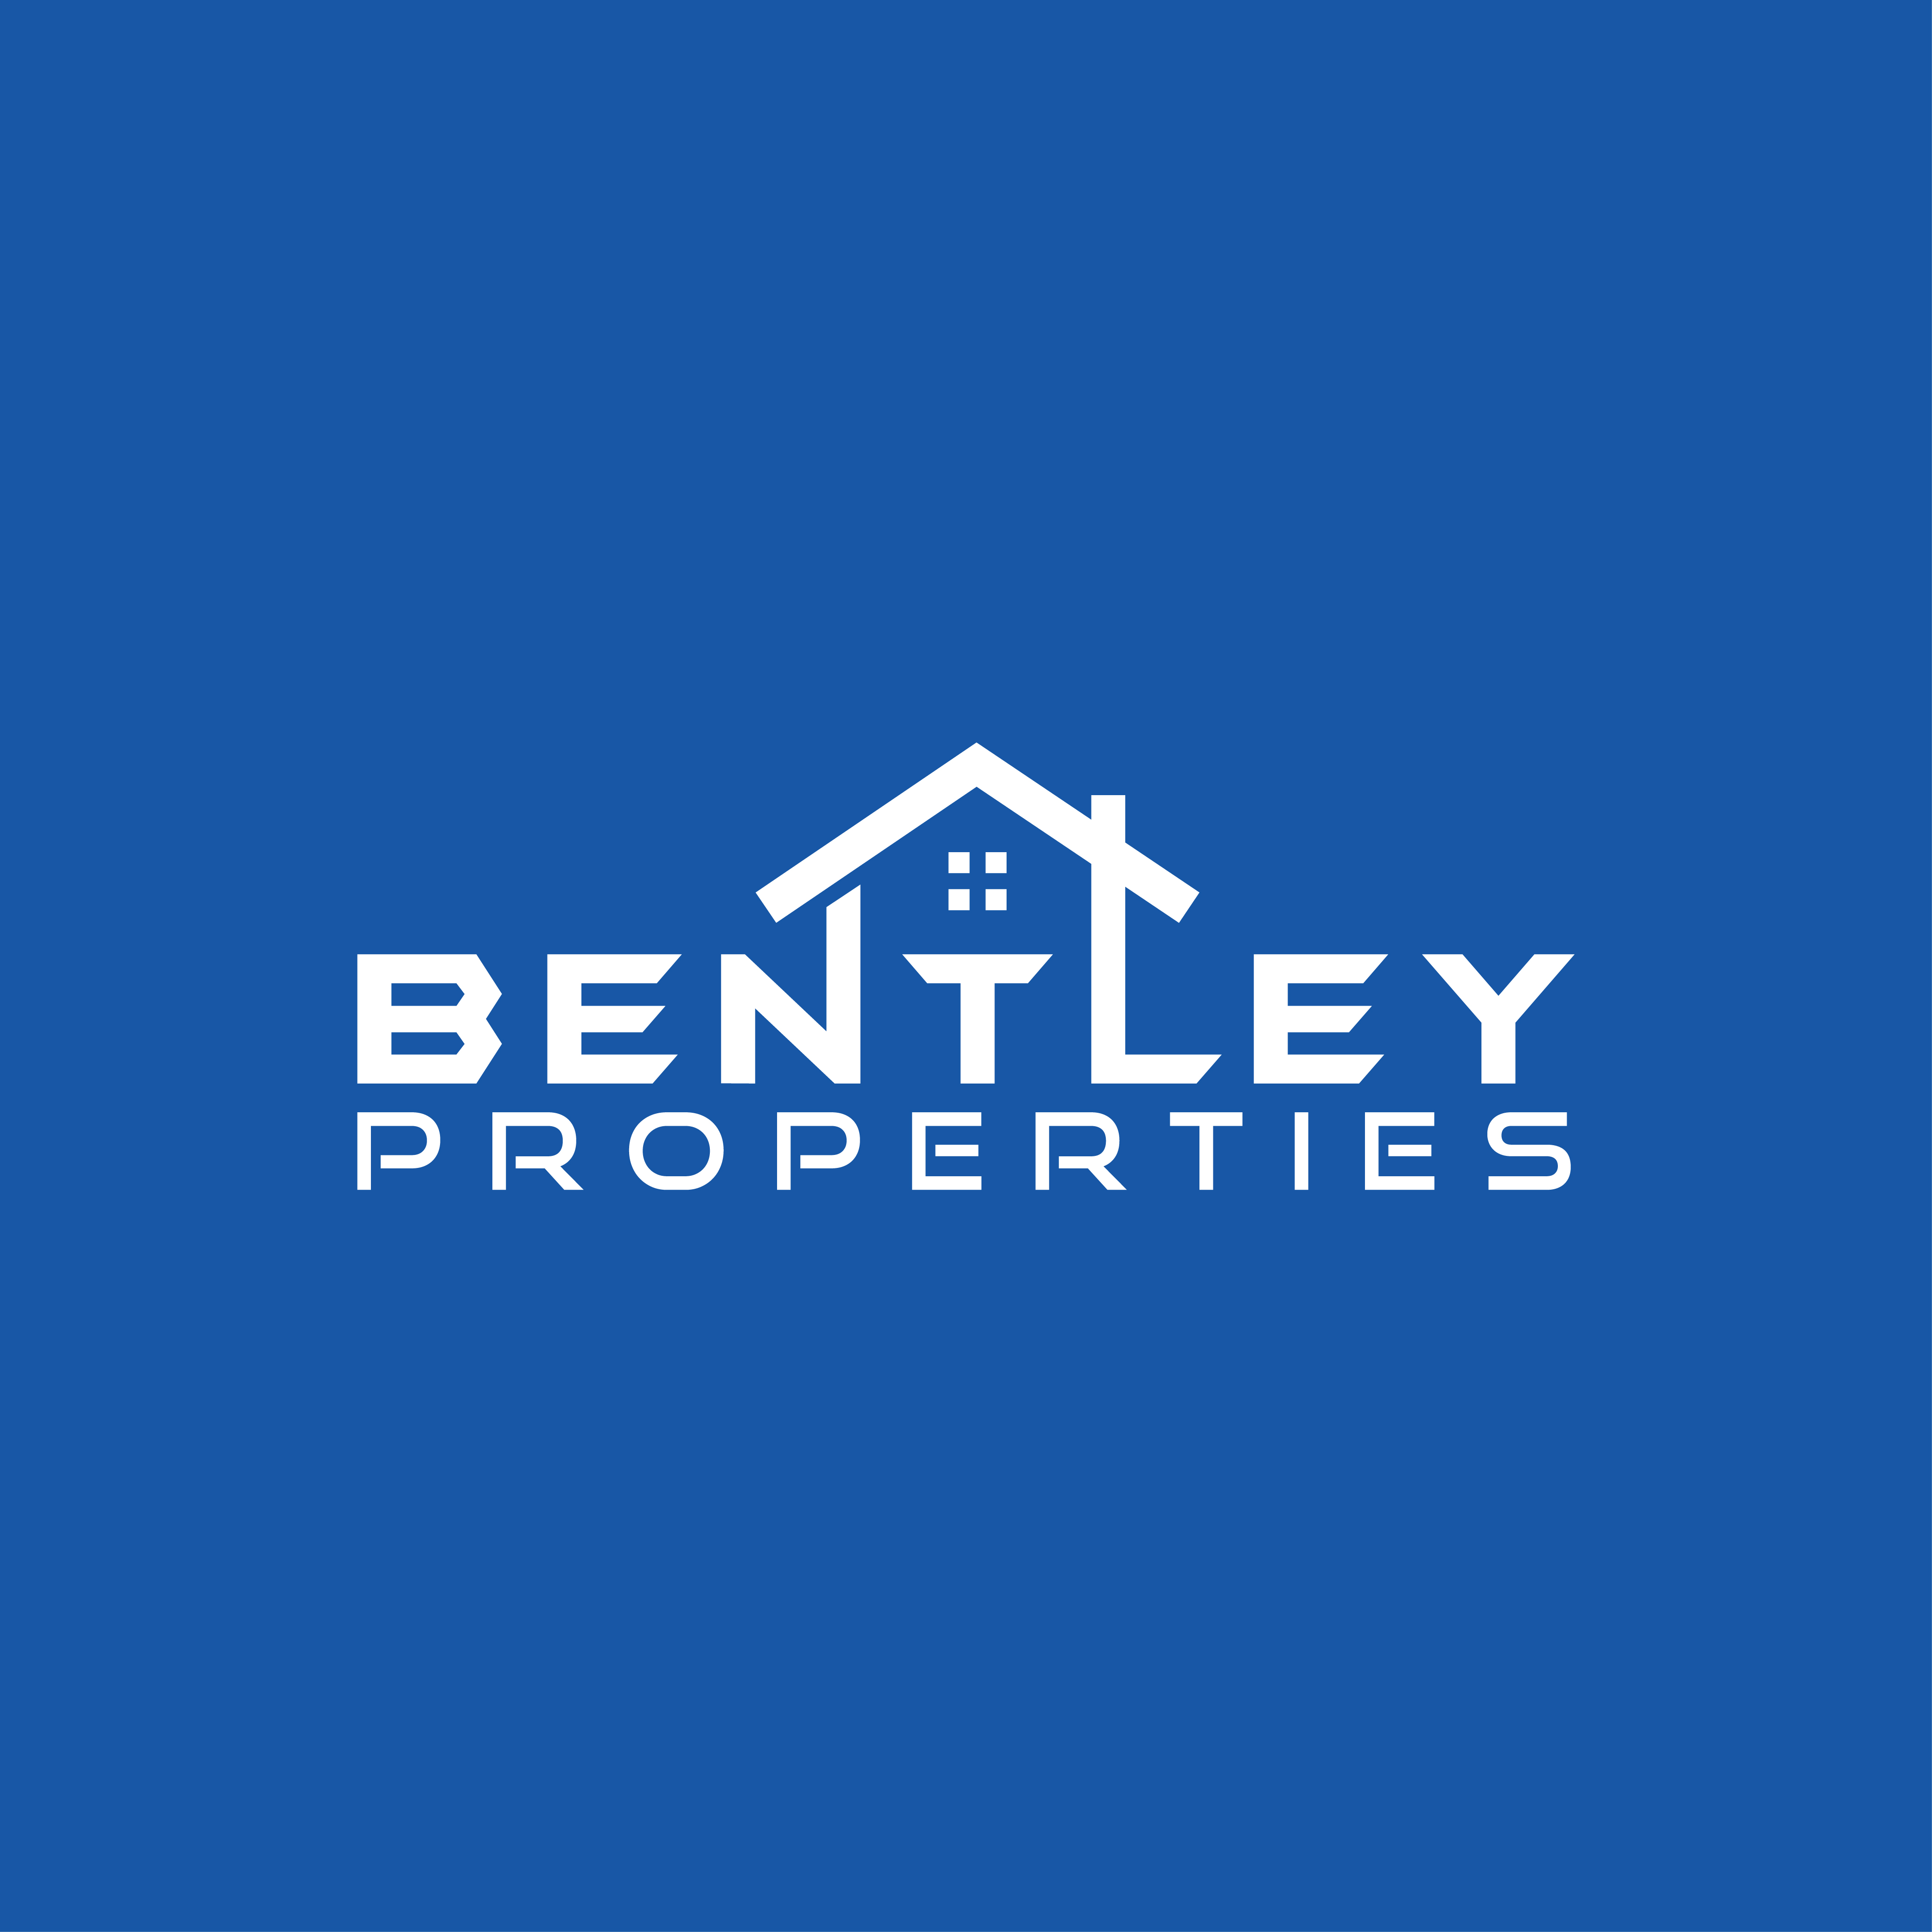 Bentley Properties